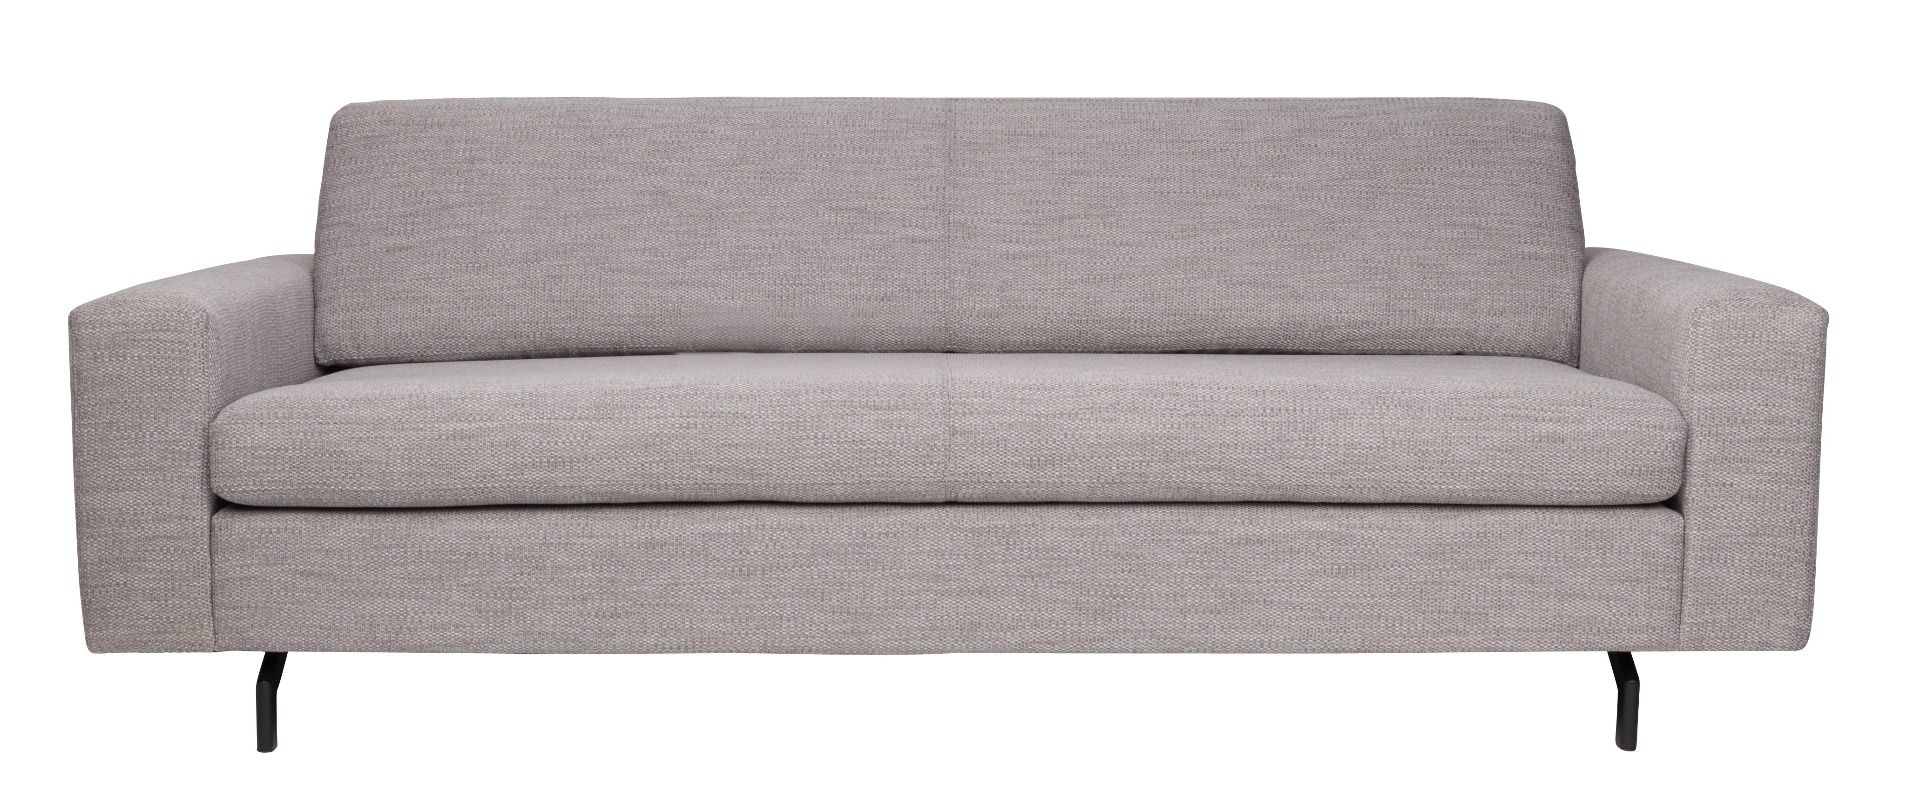 Sofa Jean 2.5 Seater in Grey